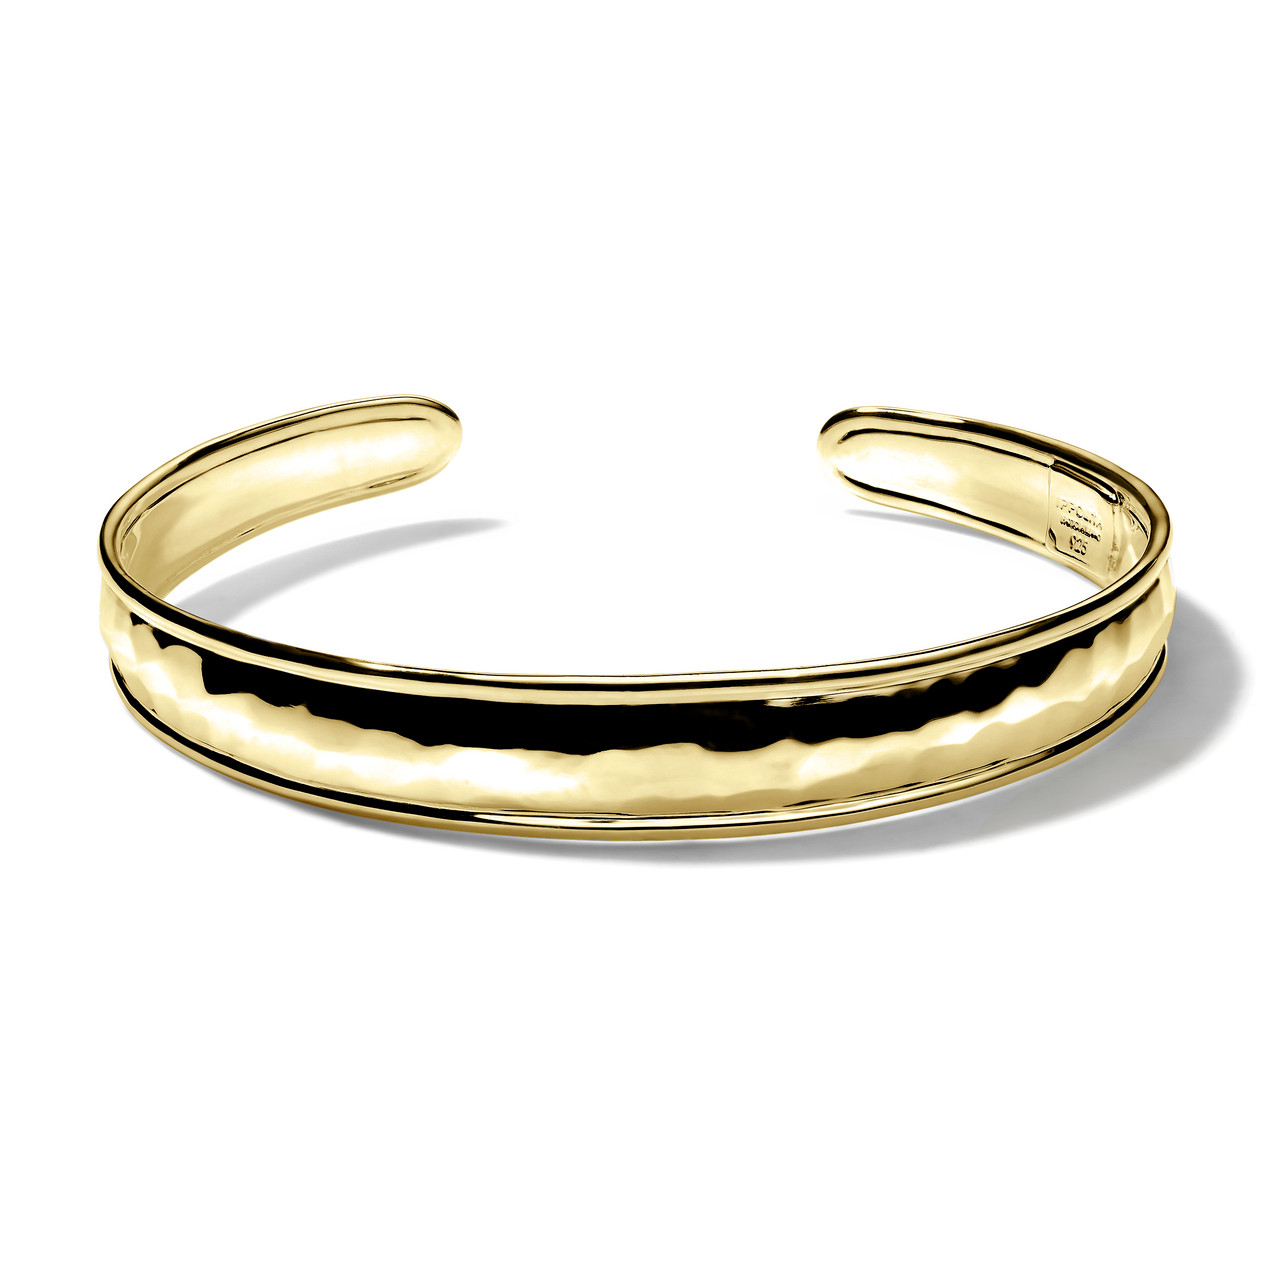 Buy Joyalukkas 18k Gold Bracelet for Women Online At Best Price @ Tata CLiQ